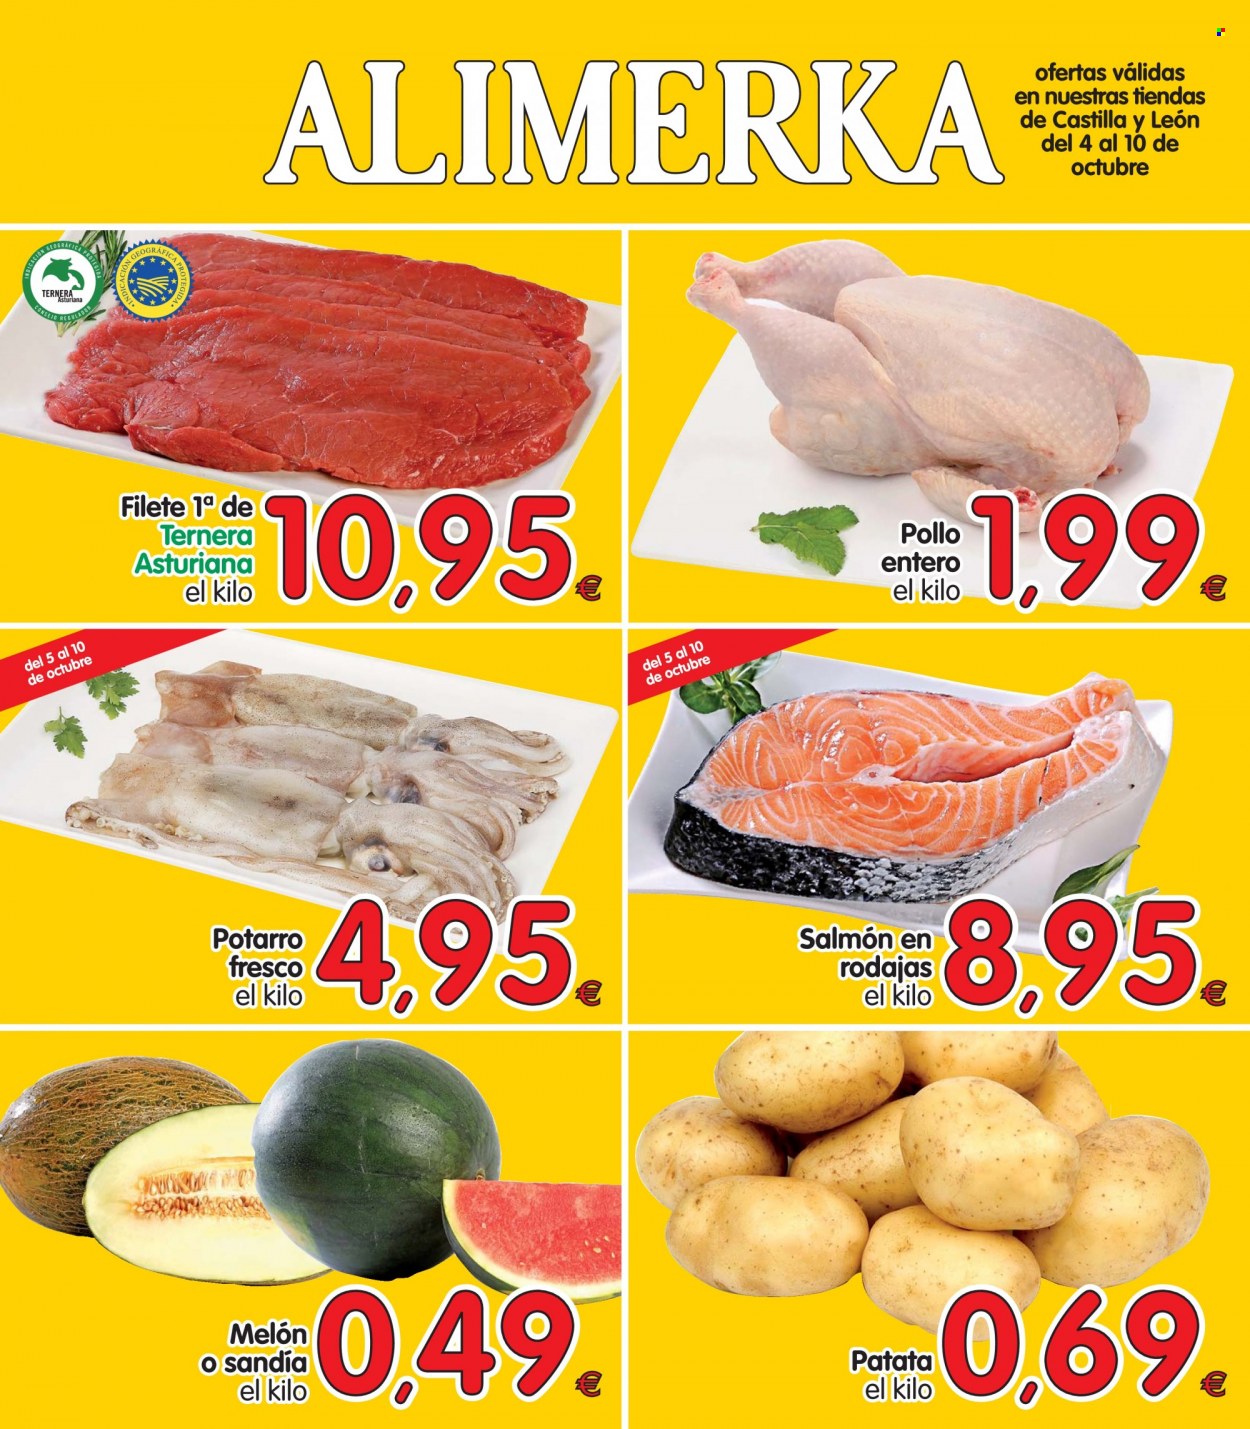 thumbnail - Folleto actual Alimerka - 04/10/21 - 10/10/21 - Ventas - pollo, carne de ternera, patatas, salmón. Página 1.